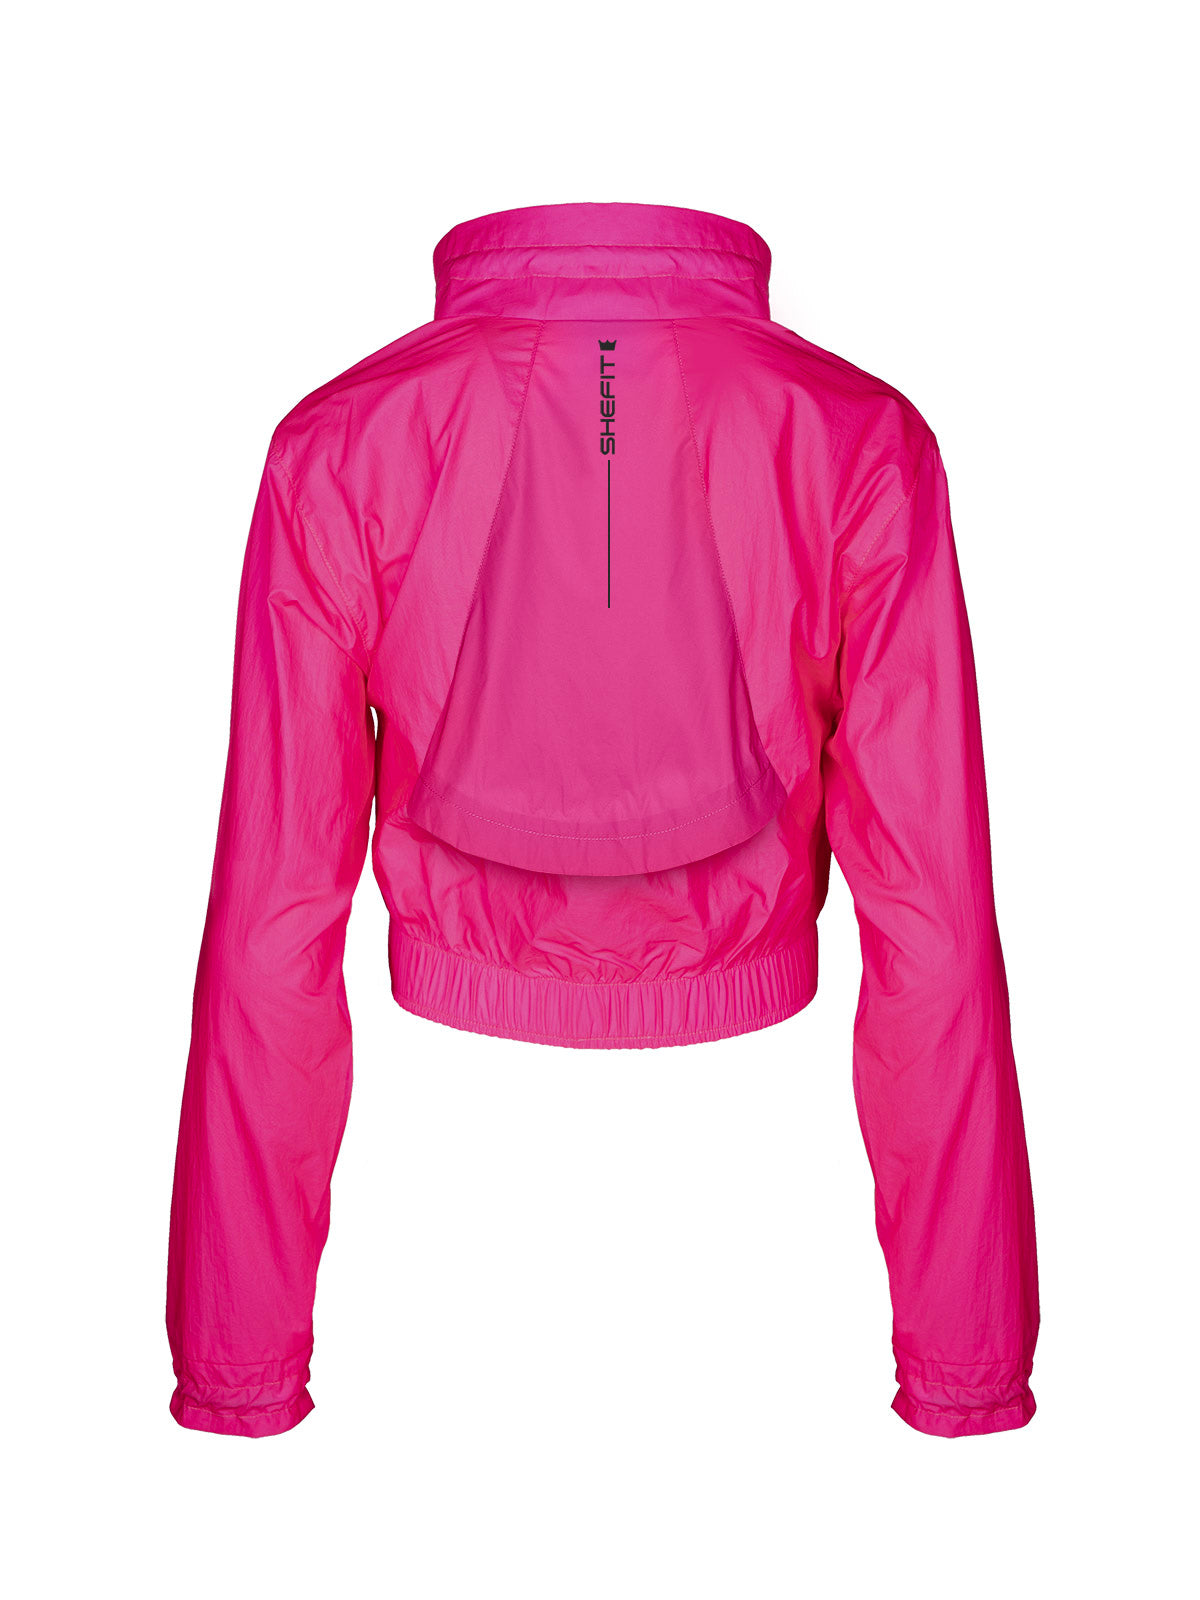 PINK Windbreaker Jacket for Women Small